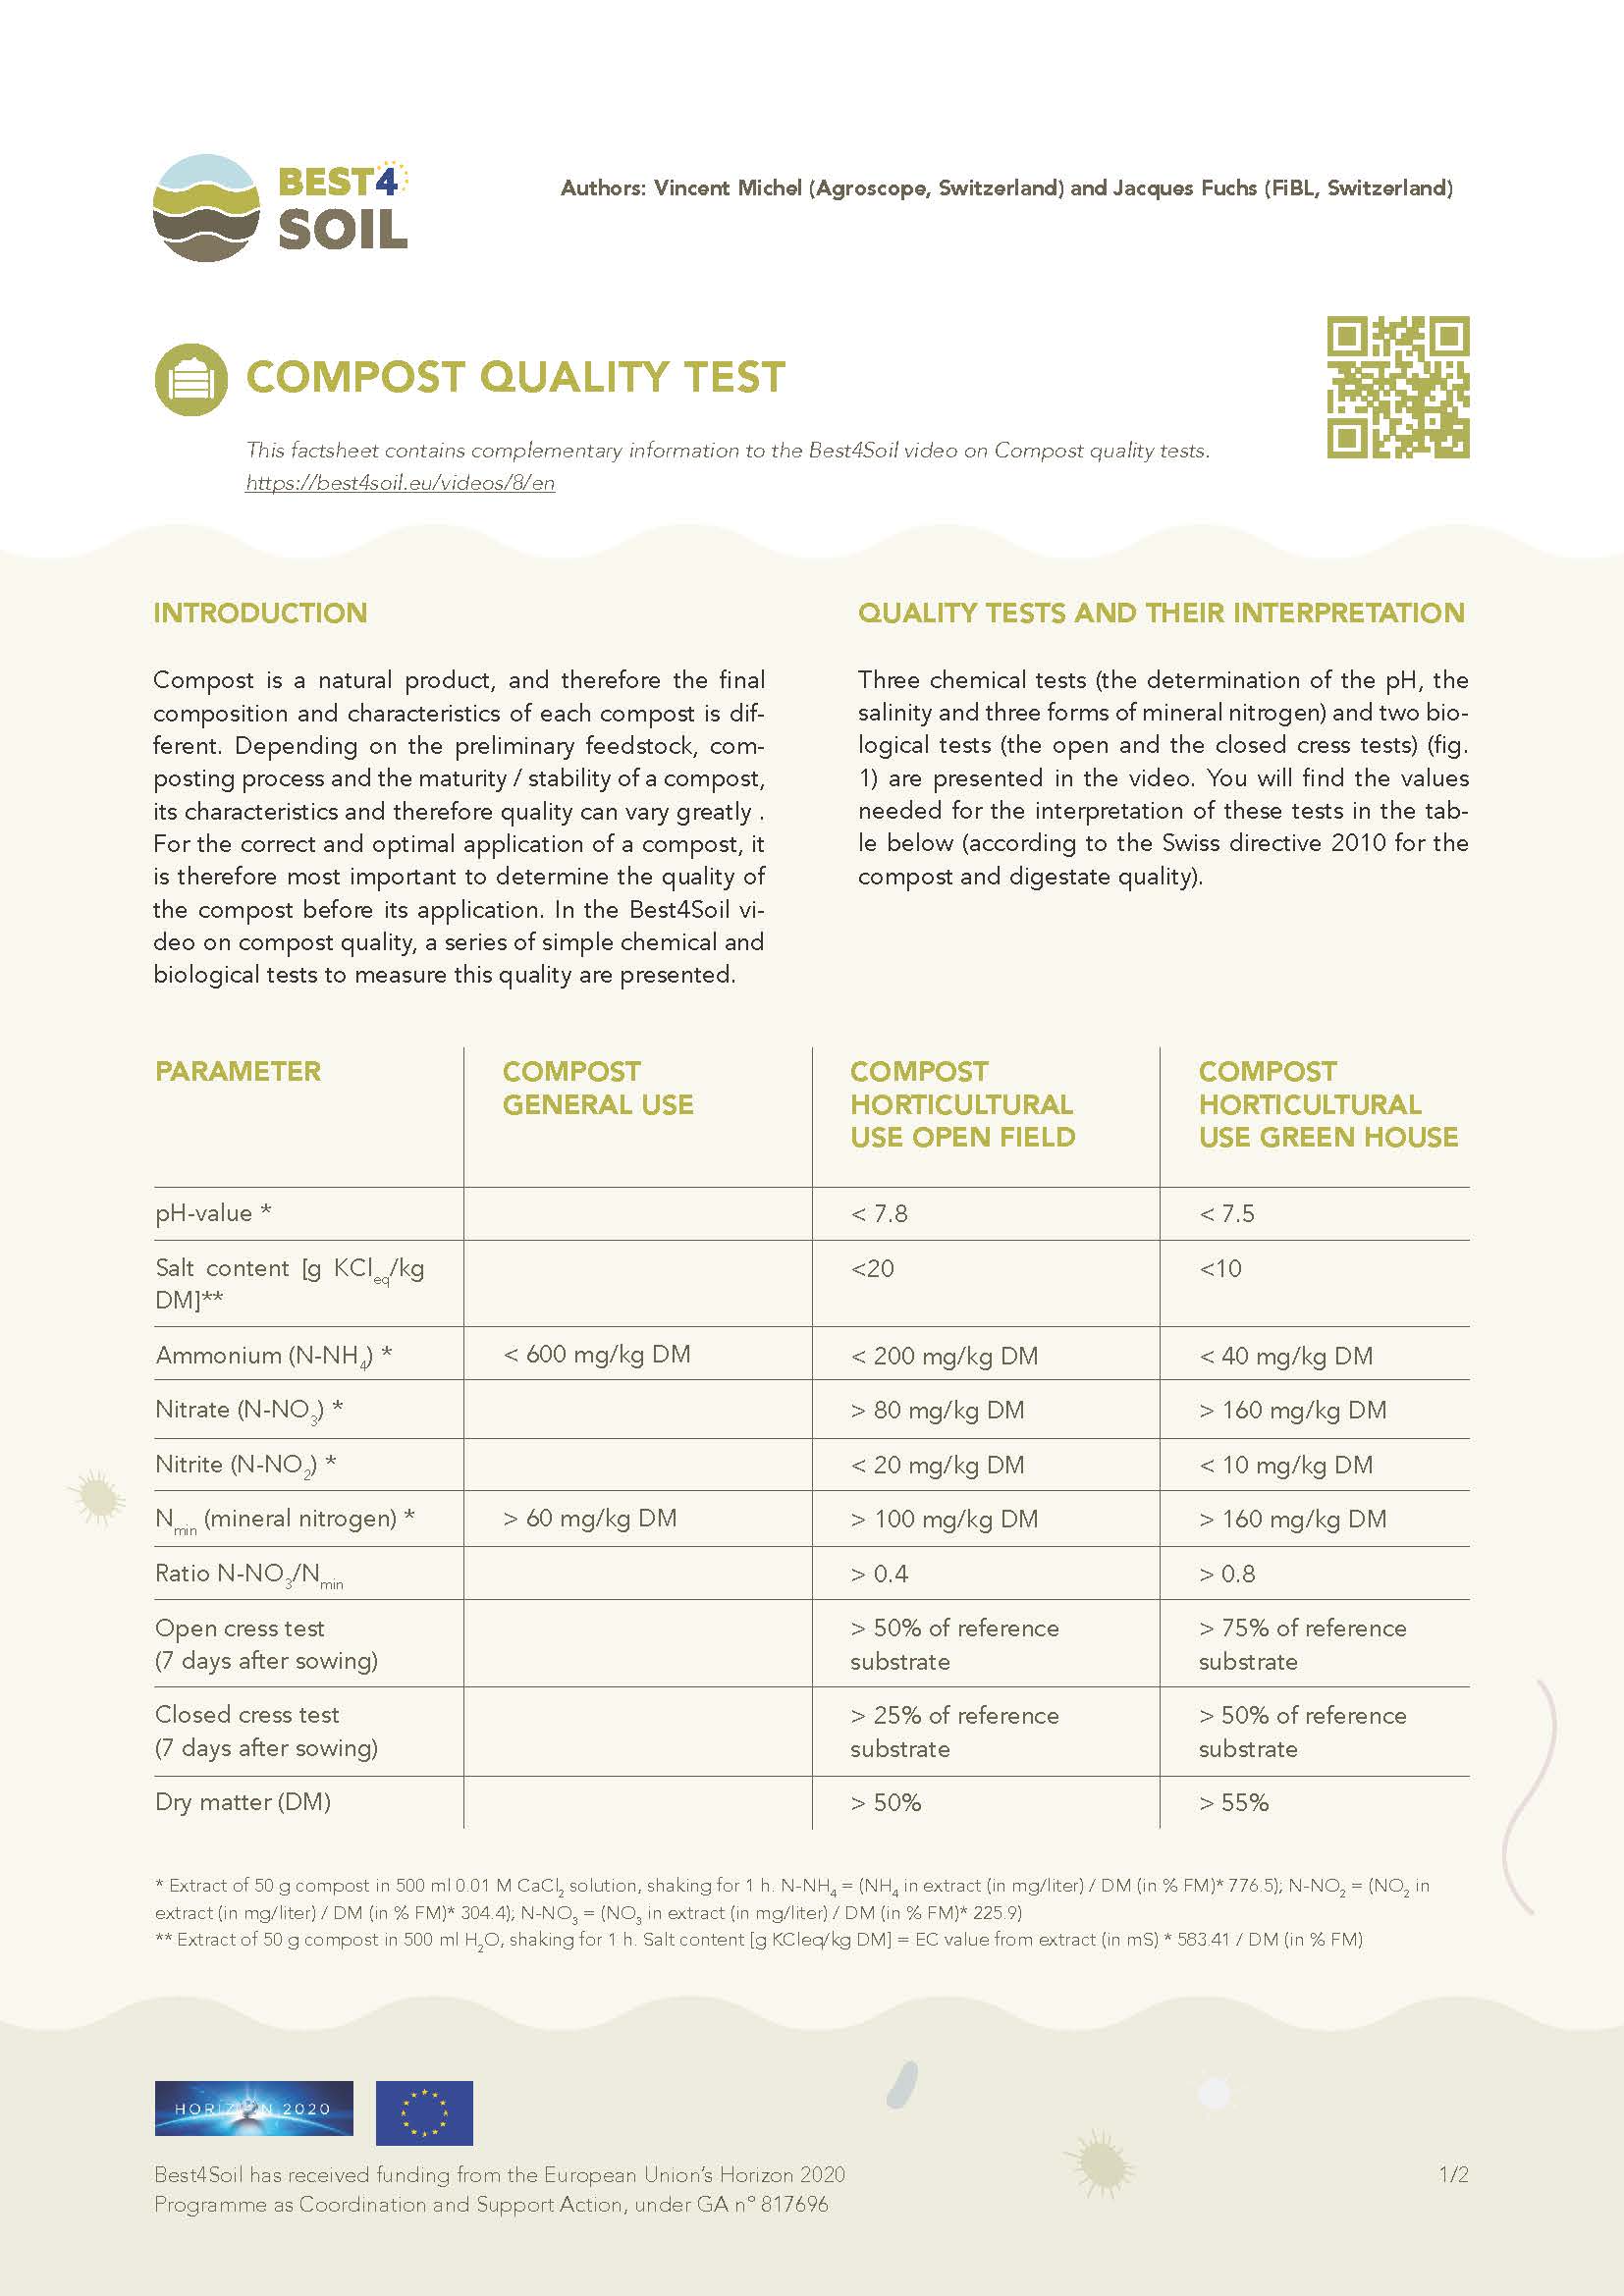 Kompostqualitätstest (Best4Soil Factsheet)